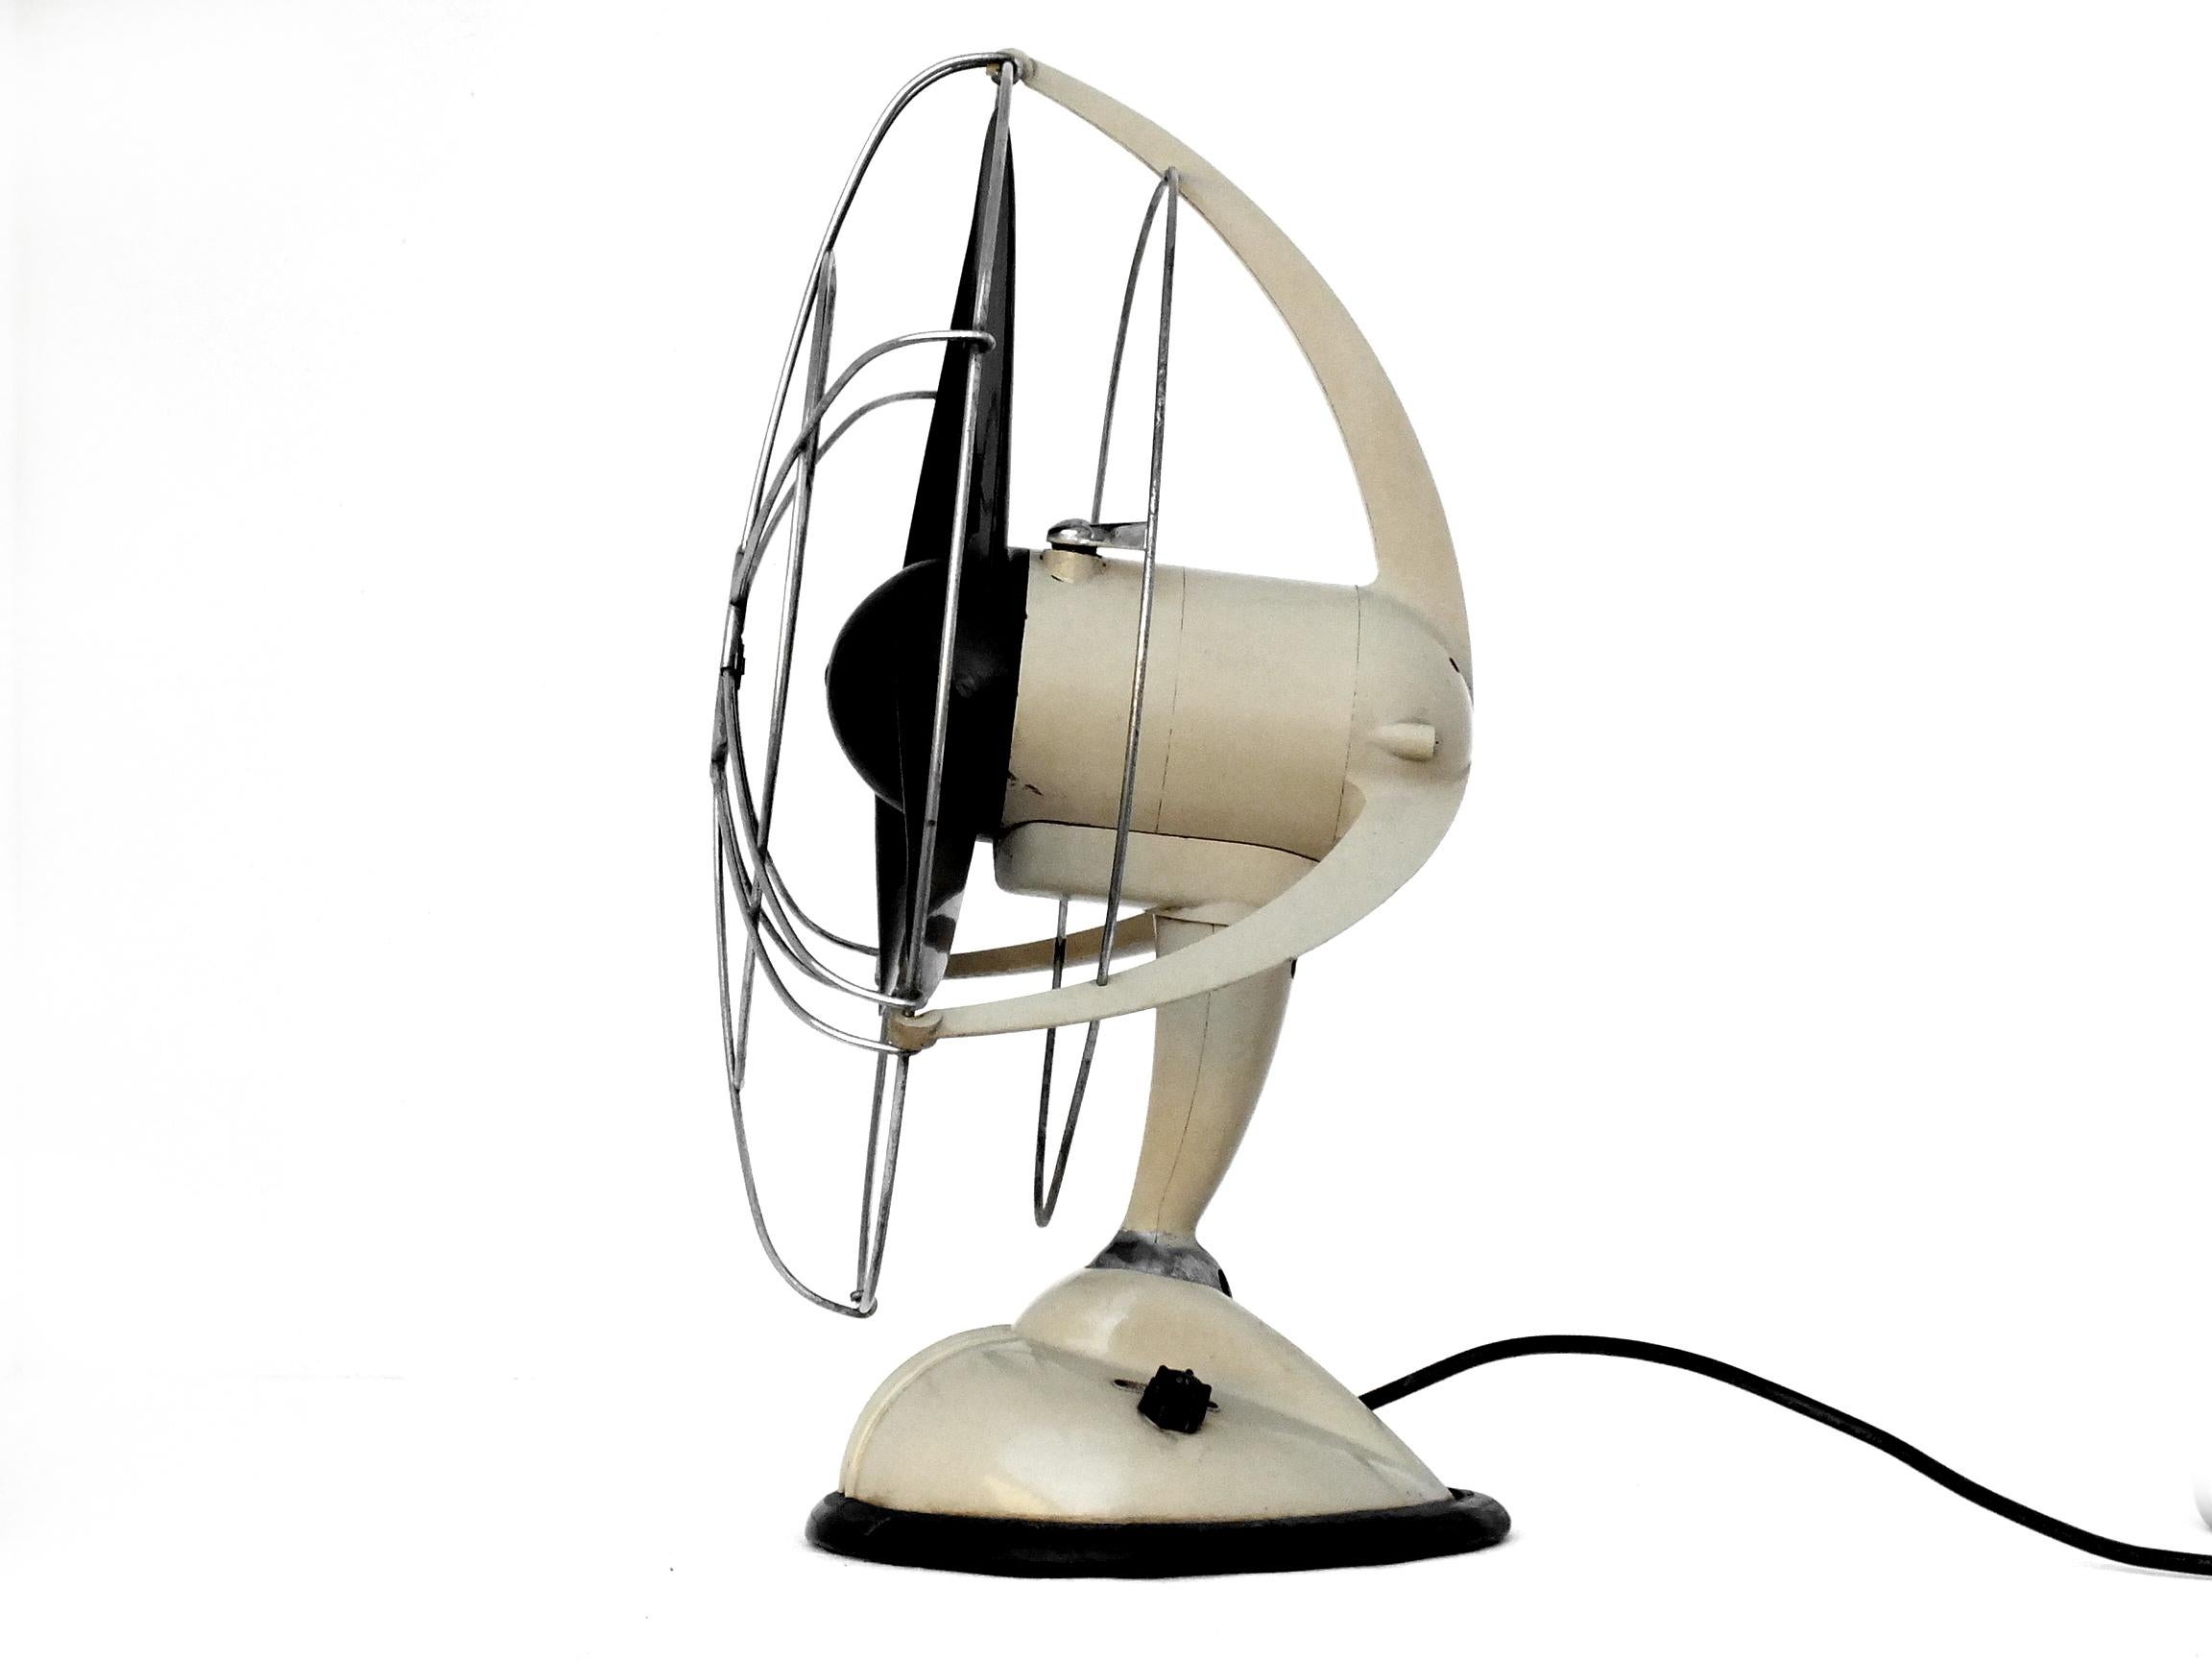 Super Ercole von Ercole Marelli Italien Design Jahre '50 elektrischer Ventilator 0-404 groß

                  messen; hoch 21,4 Zoll und ist in gutem Vintage-Zustand arbeiten zu 150-160 Volt

                  Farbe ist cremefarben und verchromt,